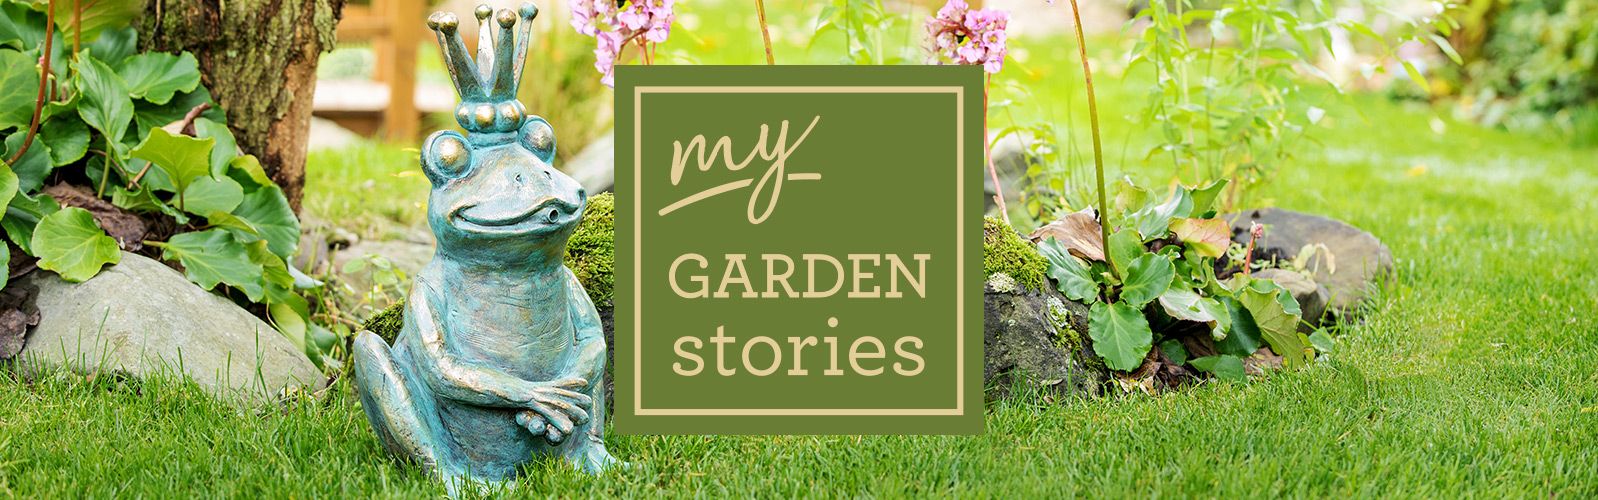 my GARDEN stories Gartenmöbel und Gartendeko